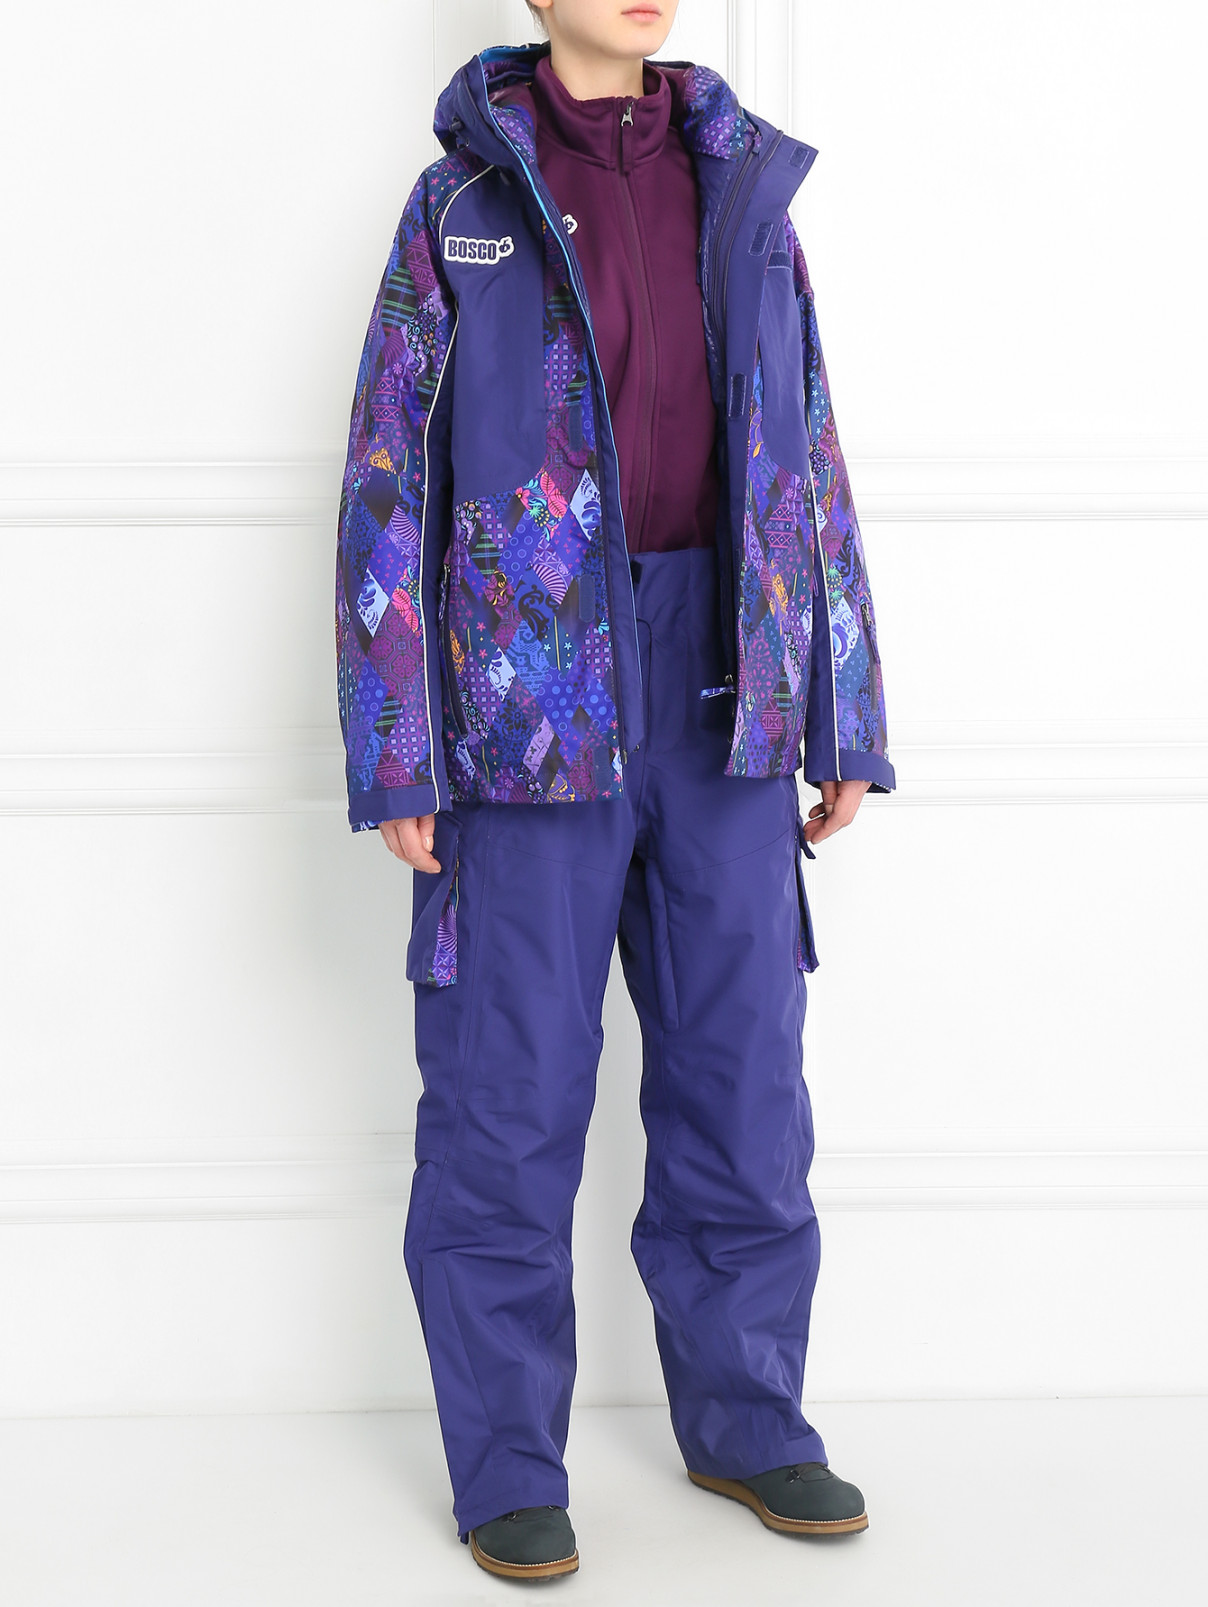 Куртка горнолыжная с узором BOSCO  –  Модель Общий вид  – Цвет:  Фиолетовый